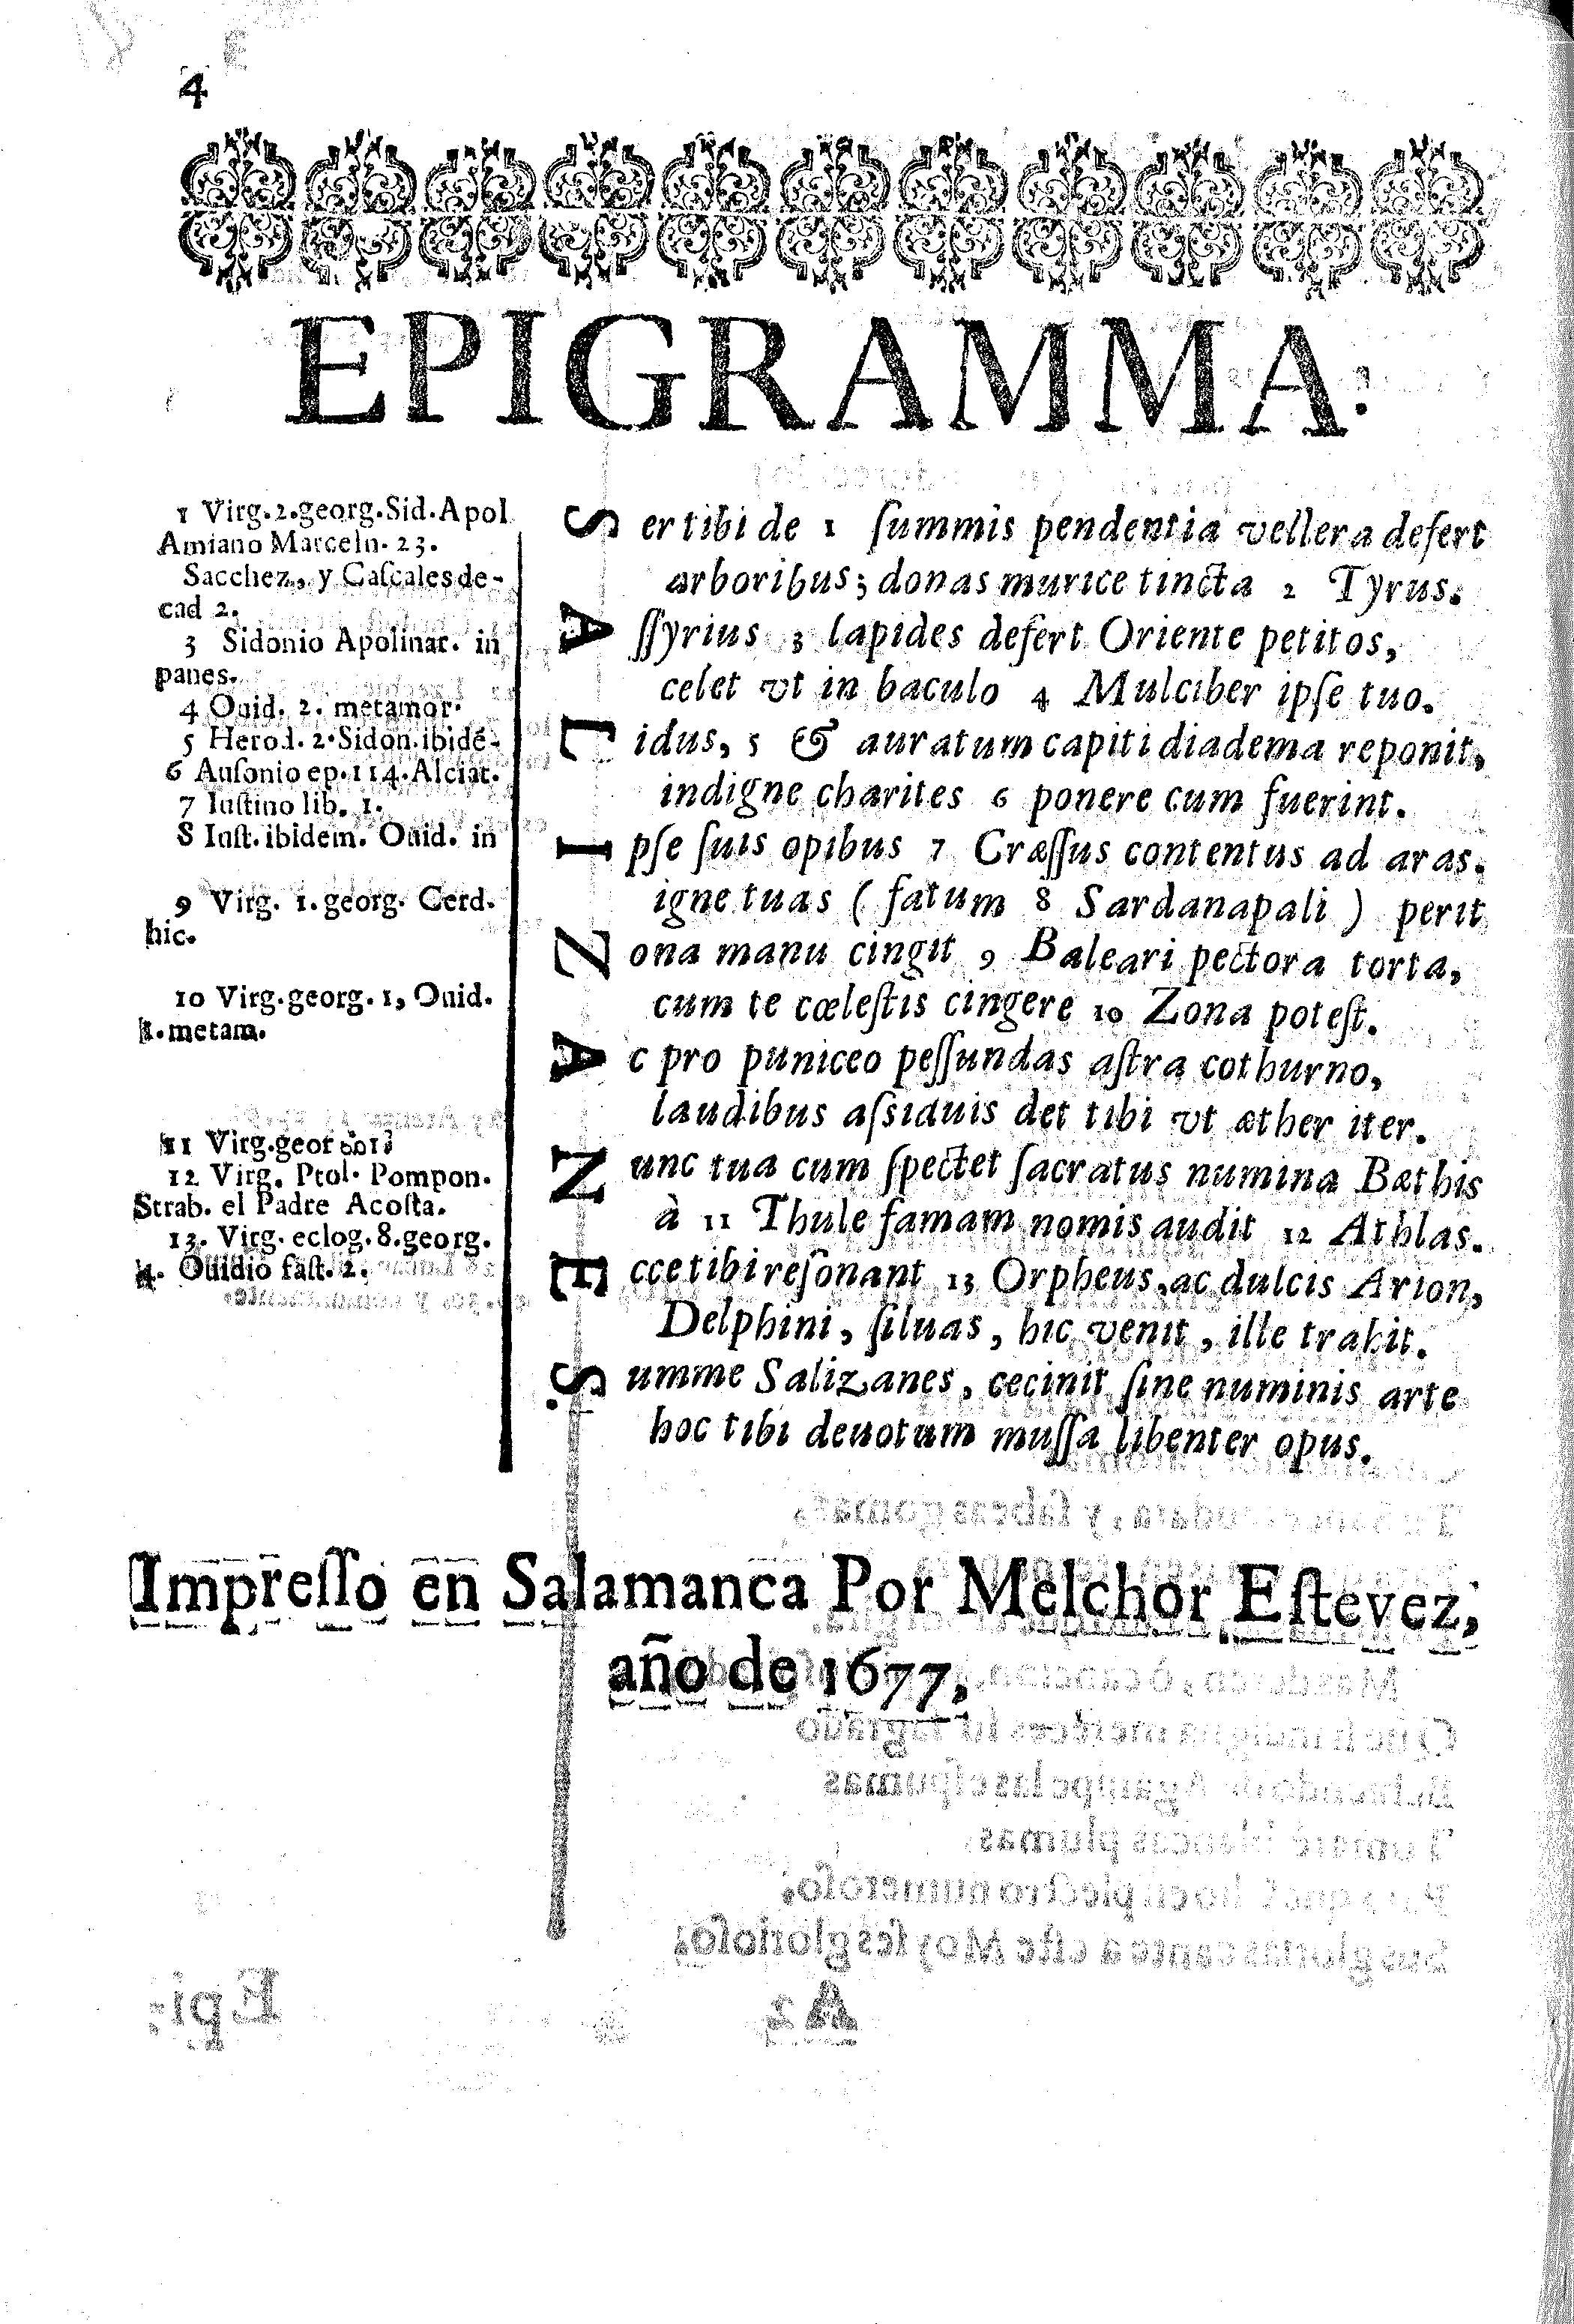 Epigramma